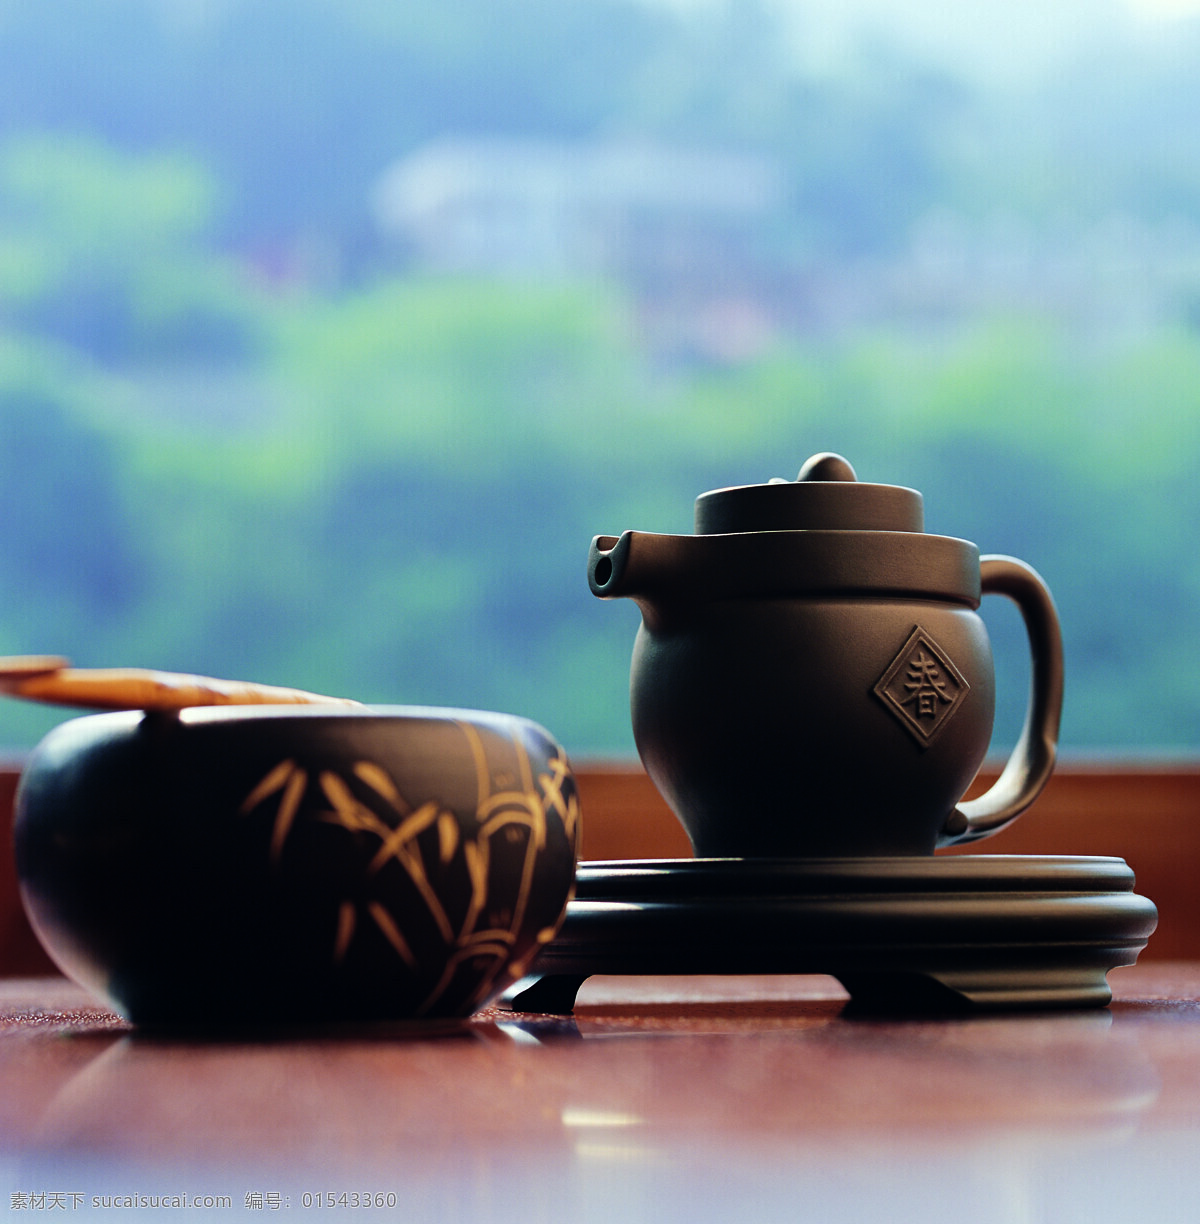 品茶文化 茶 茶文化 茶壶 茶具 黑色